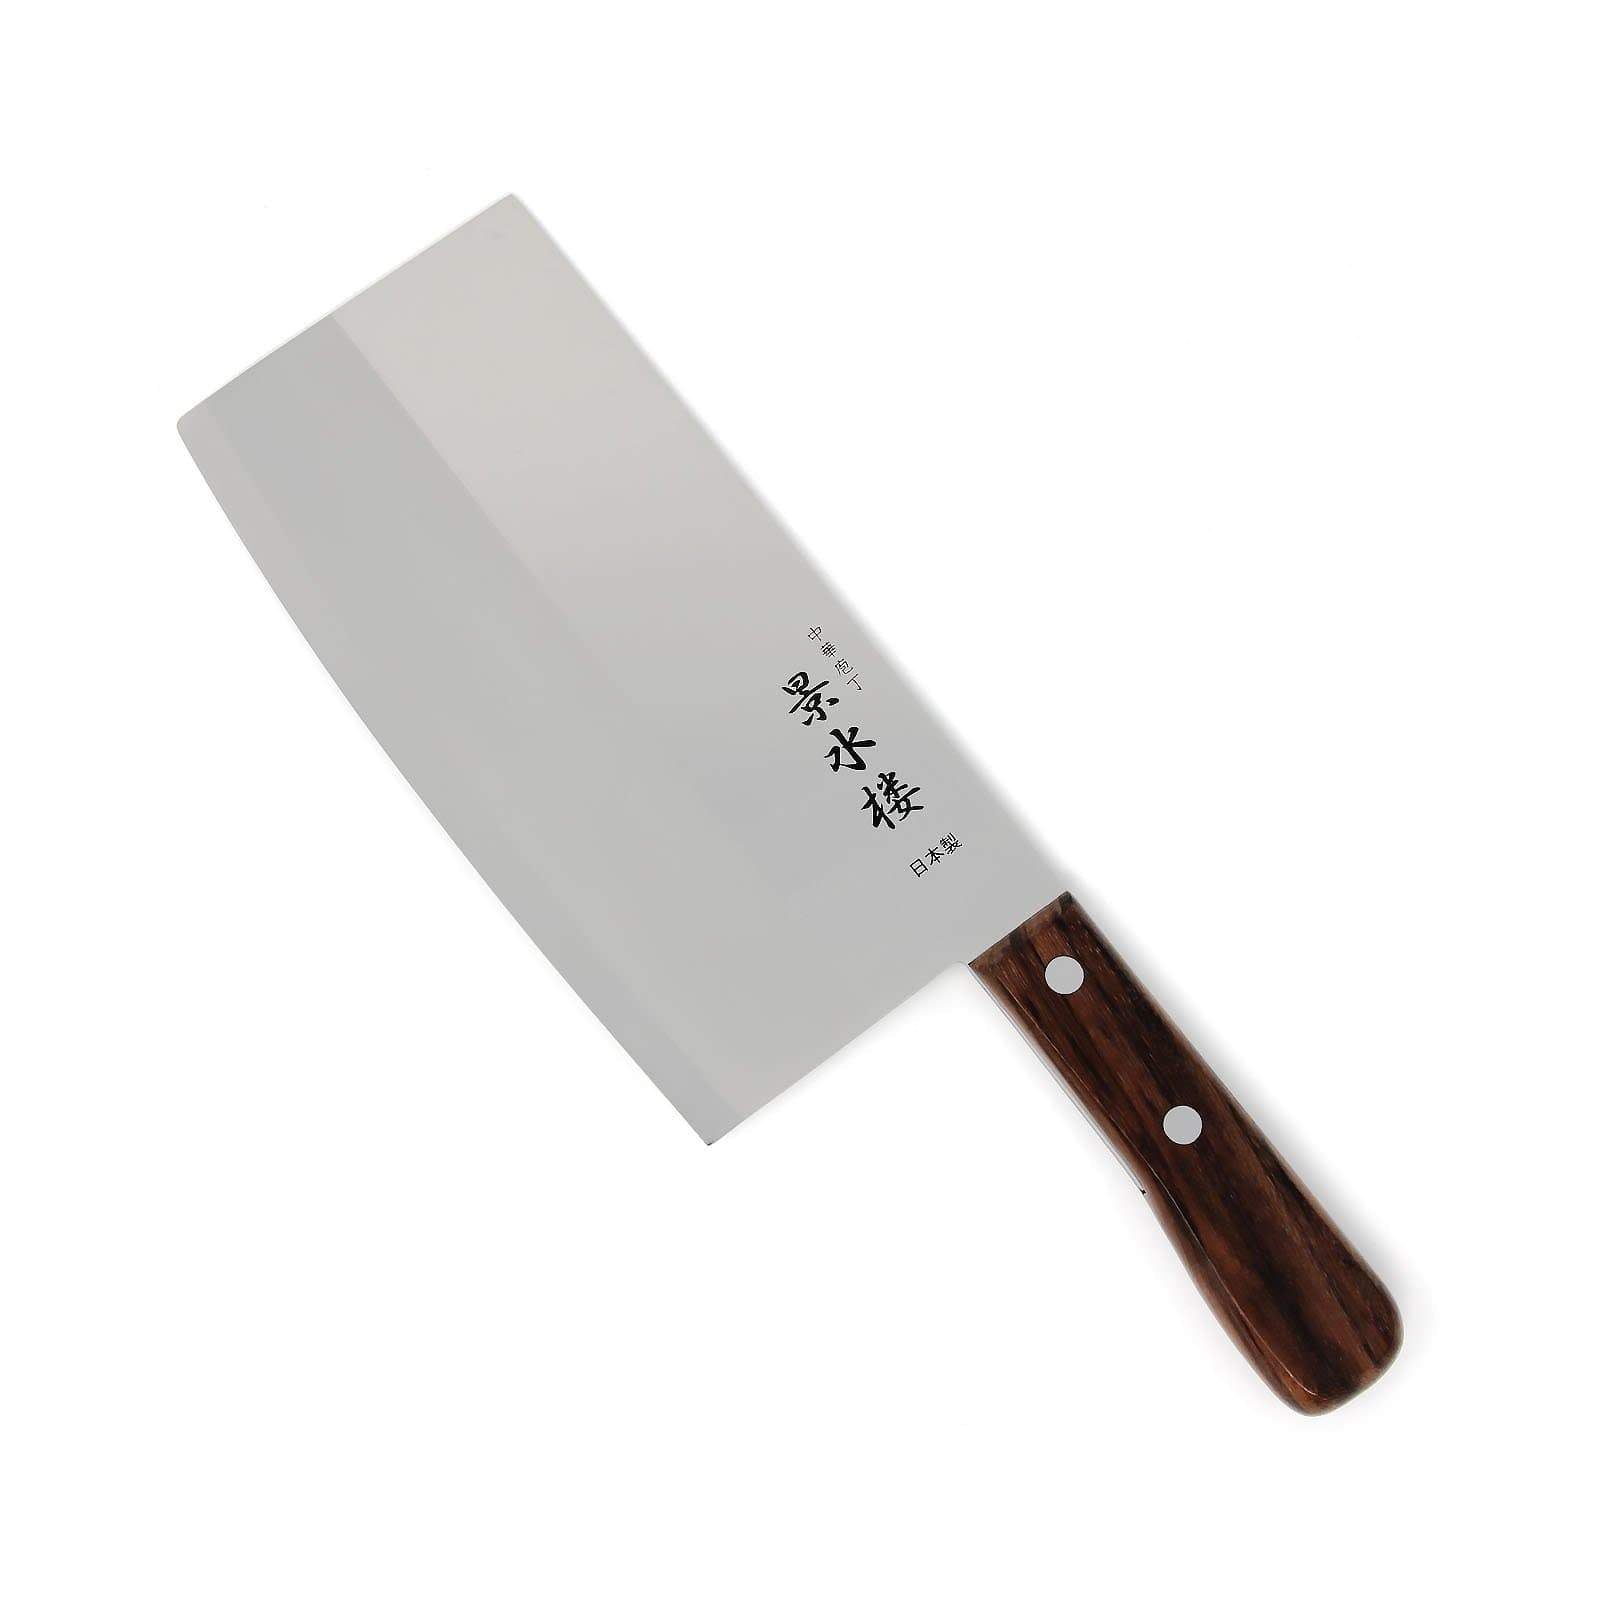 Китайские кухонные ножи. Цай Дао нож. Китайский нож топорик Цай Дао. Китайский кухонный нож Цай-Дао. Цай Дао китайский шеф.